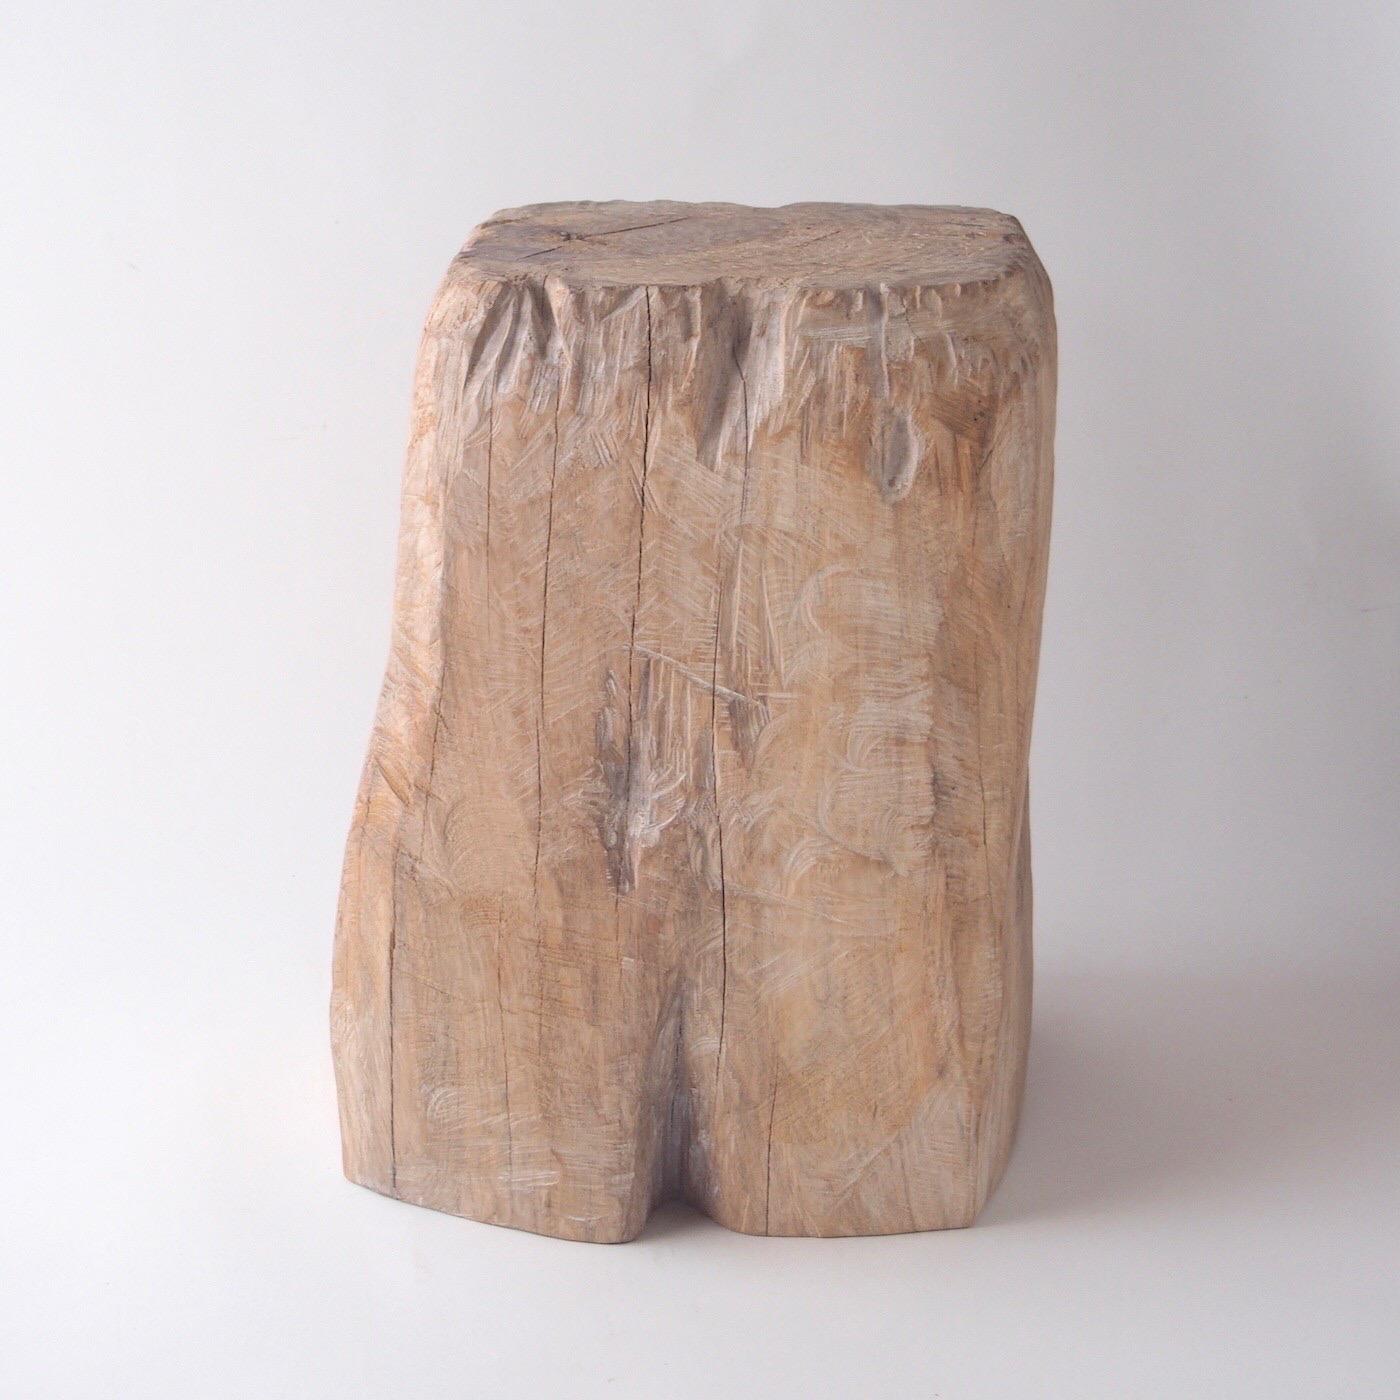 Nom : Torse
Tabouret sculptural par Zogei meubles sculptés
Matériau : Zelkova
Cette œuvre est taillée dans le bois avec des sortes de tronçonneuses.
La plupart des bois utilisés pour les œuvres de Nishimura ne peuvent servir à rien, ces bois